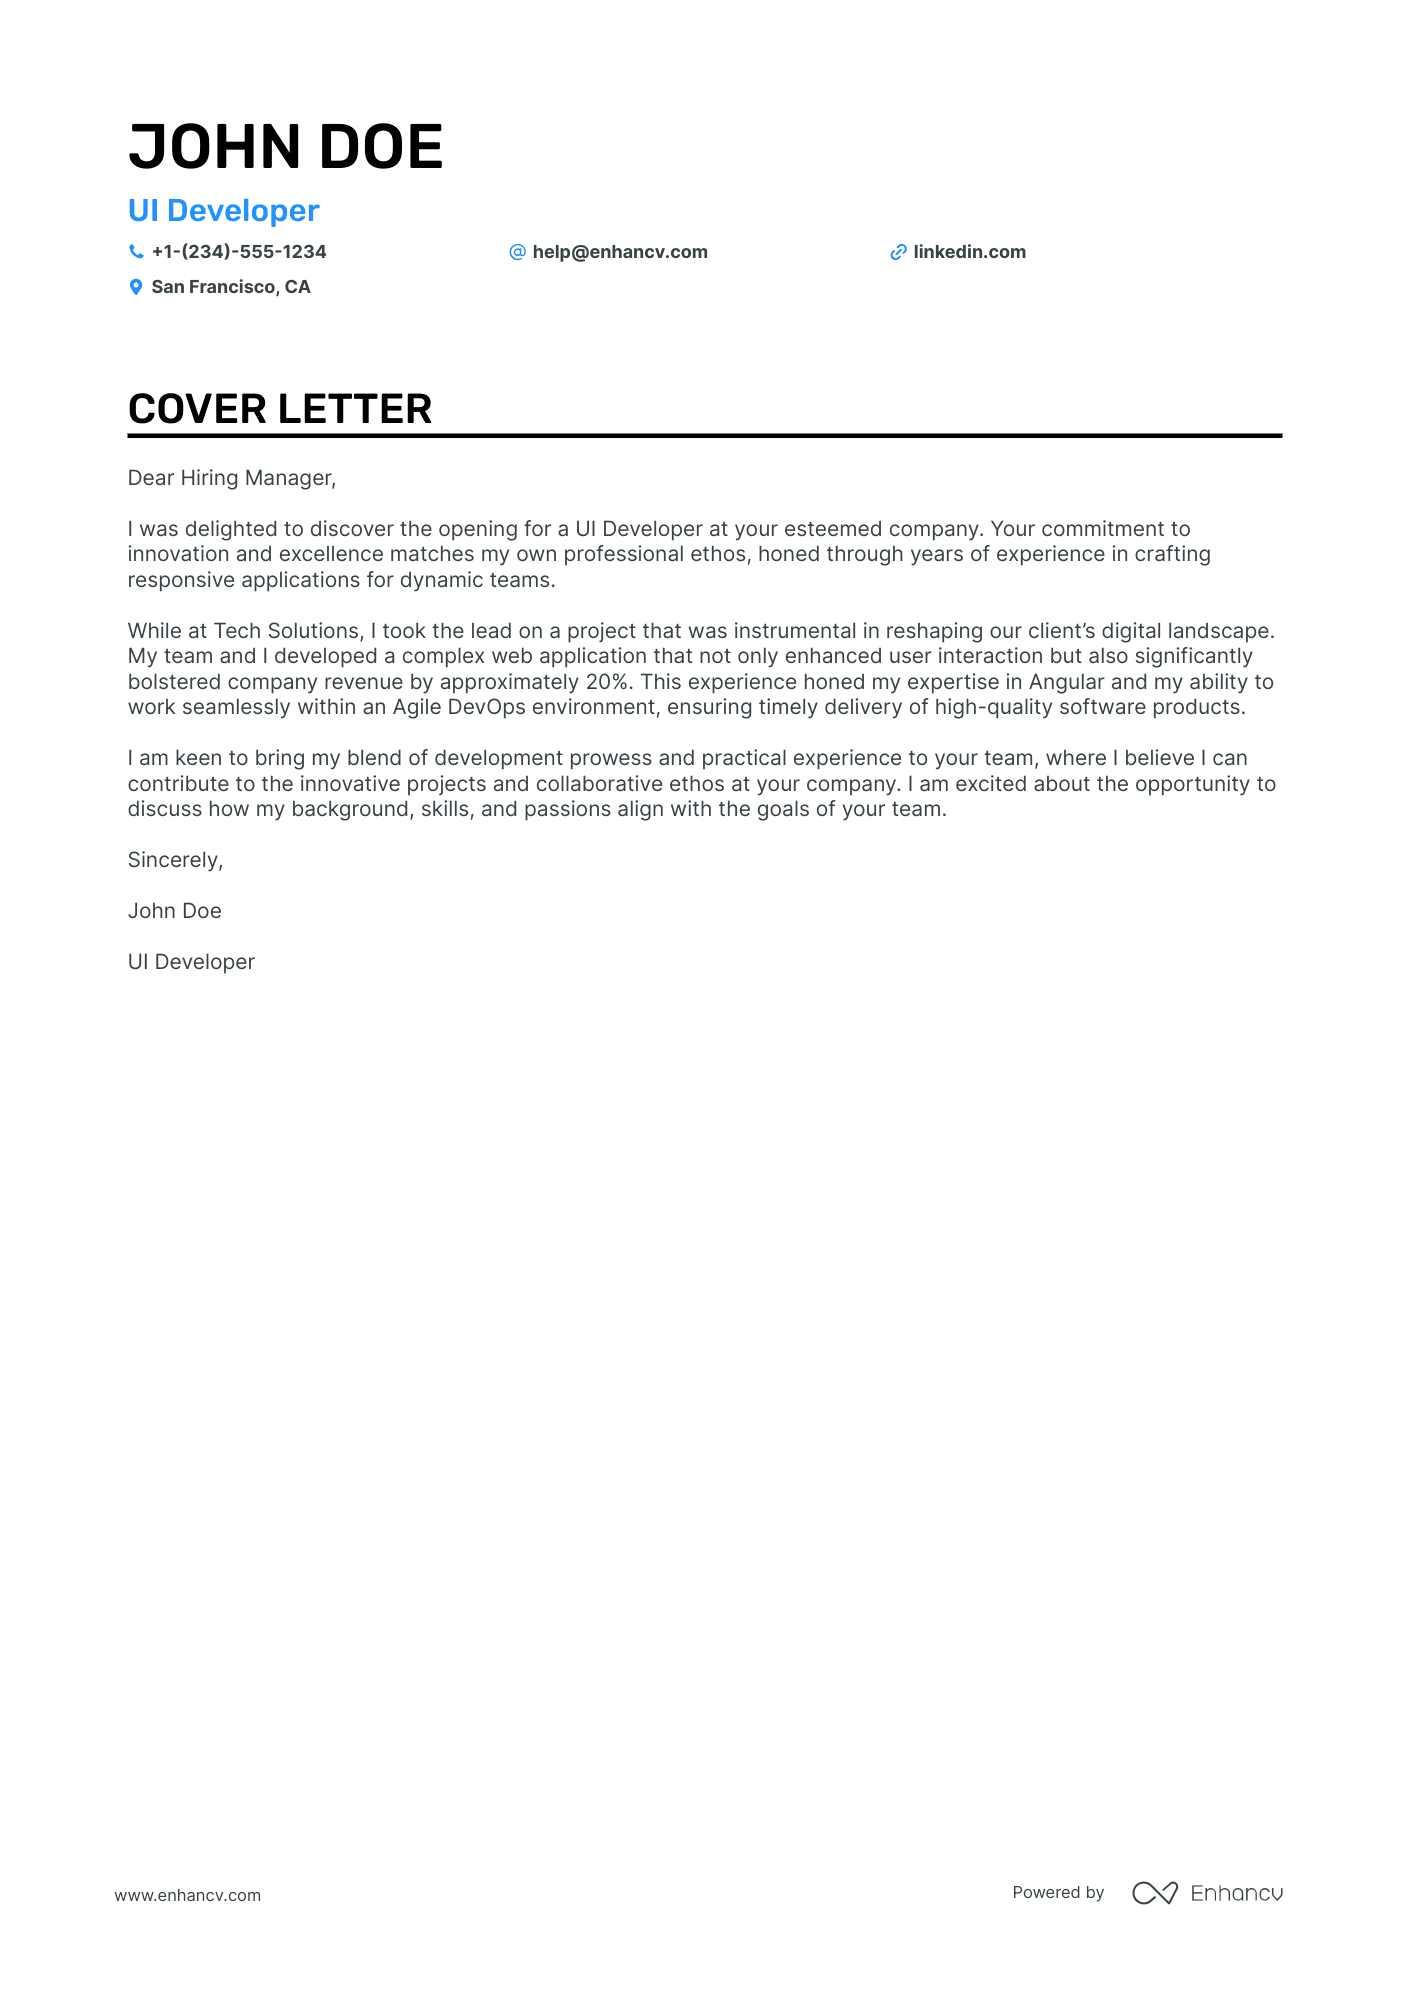 UI Developer cover letter